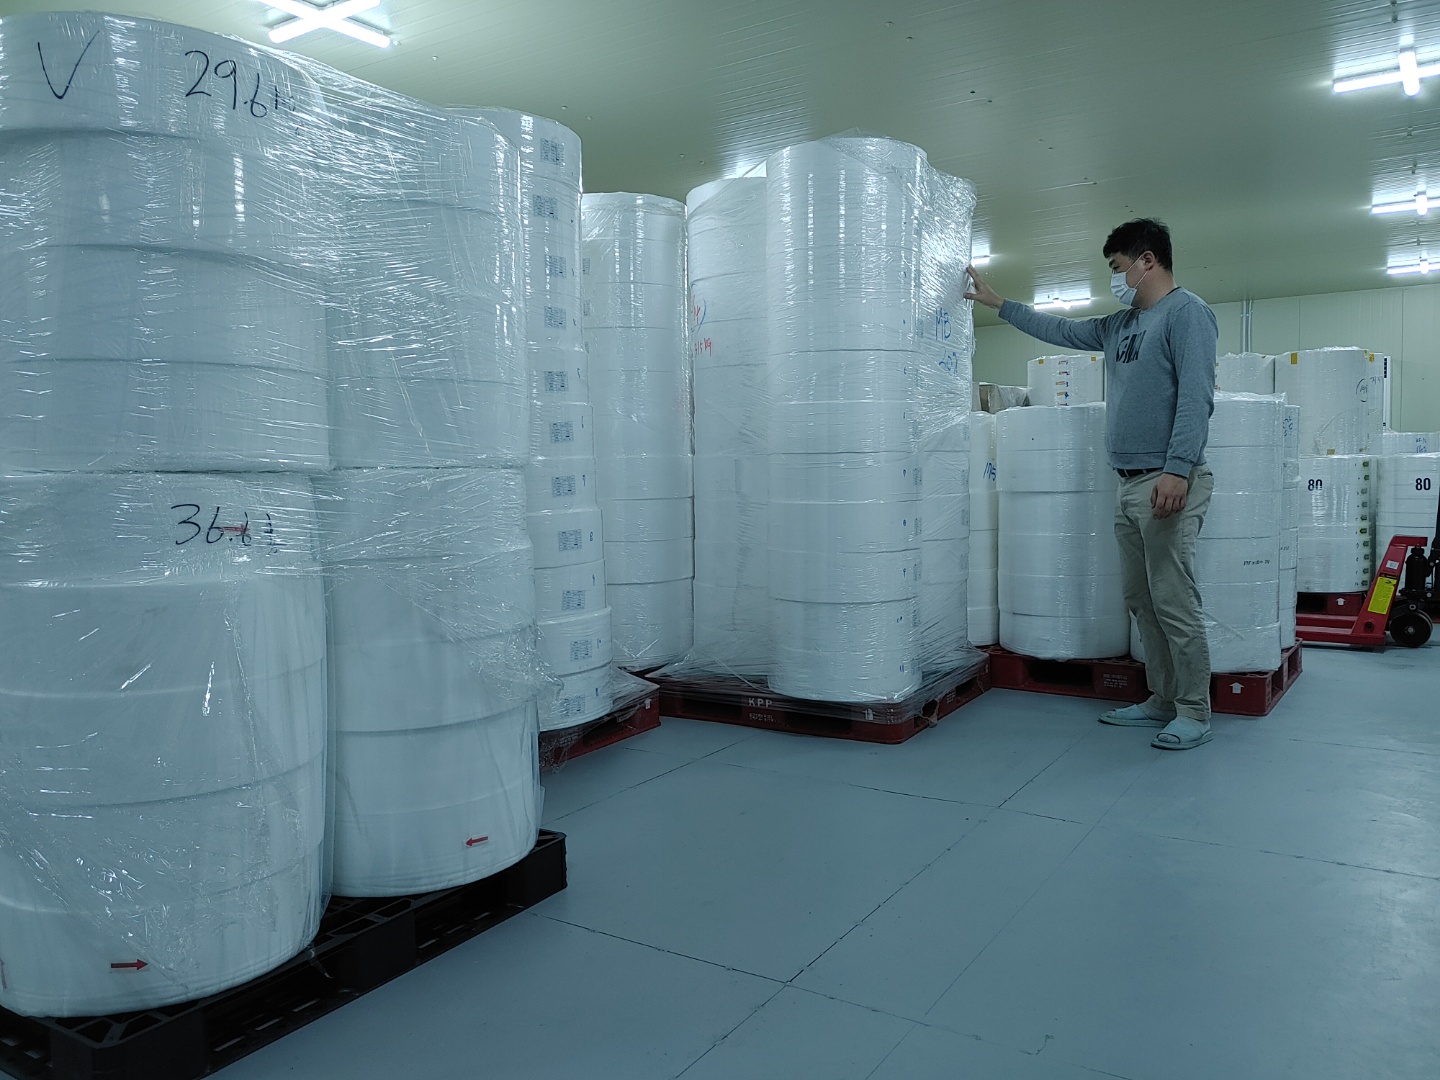 울산 북구 중산동 마스크 제조업체의 한 직원이 23일 원자재실에 쌓여 있는 자재를 확인하고 있다. 울산 박정훈 기자